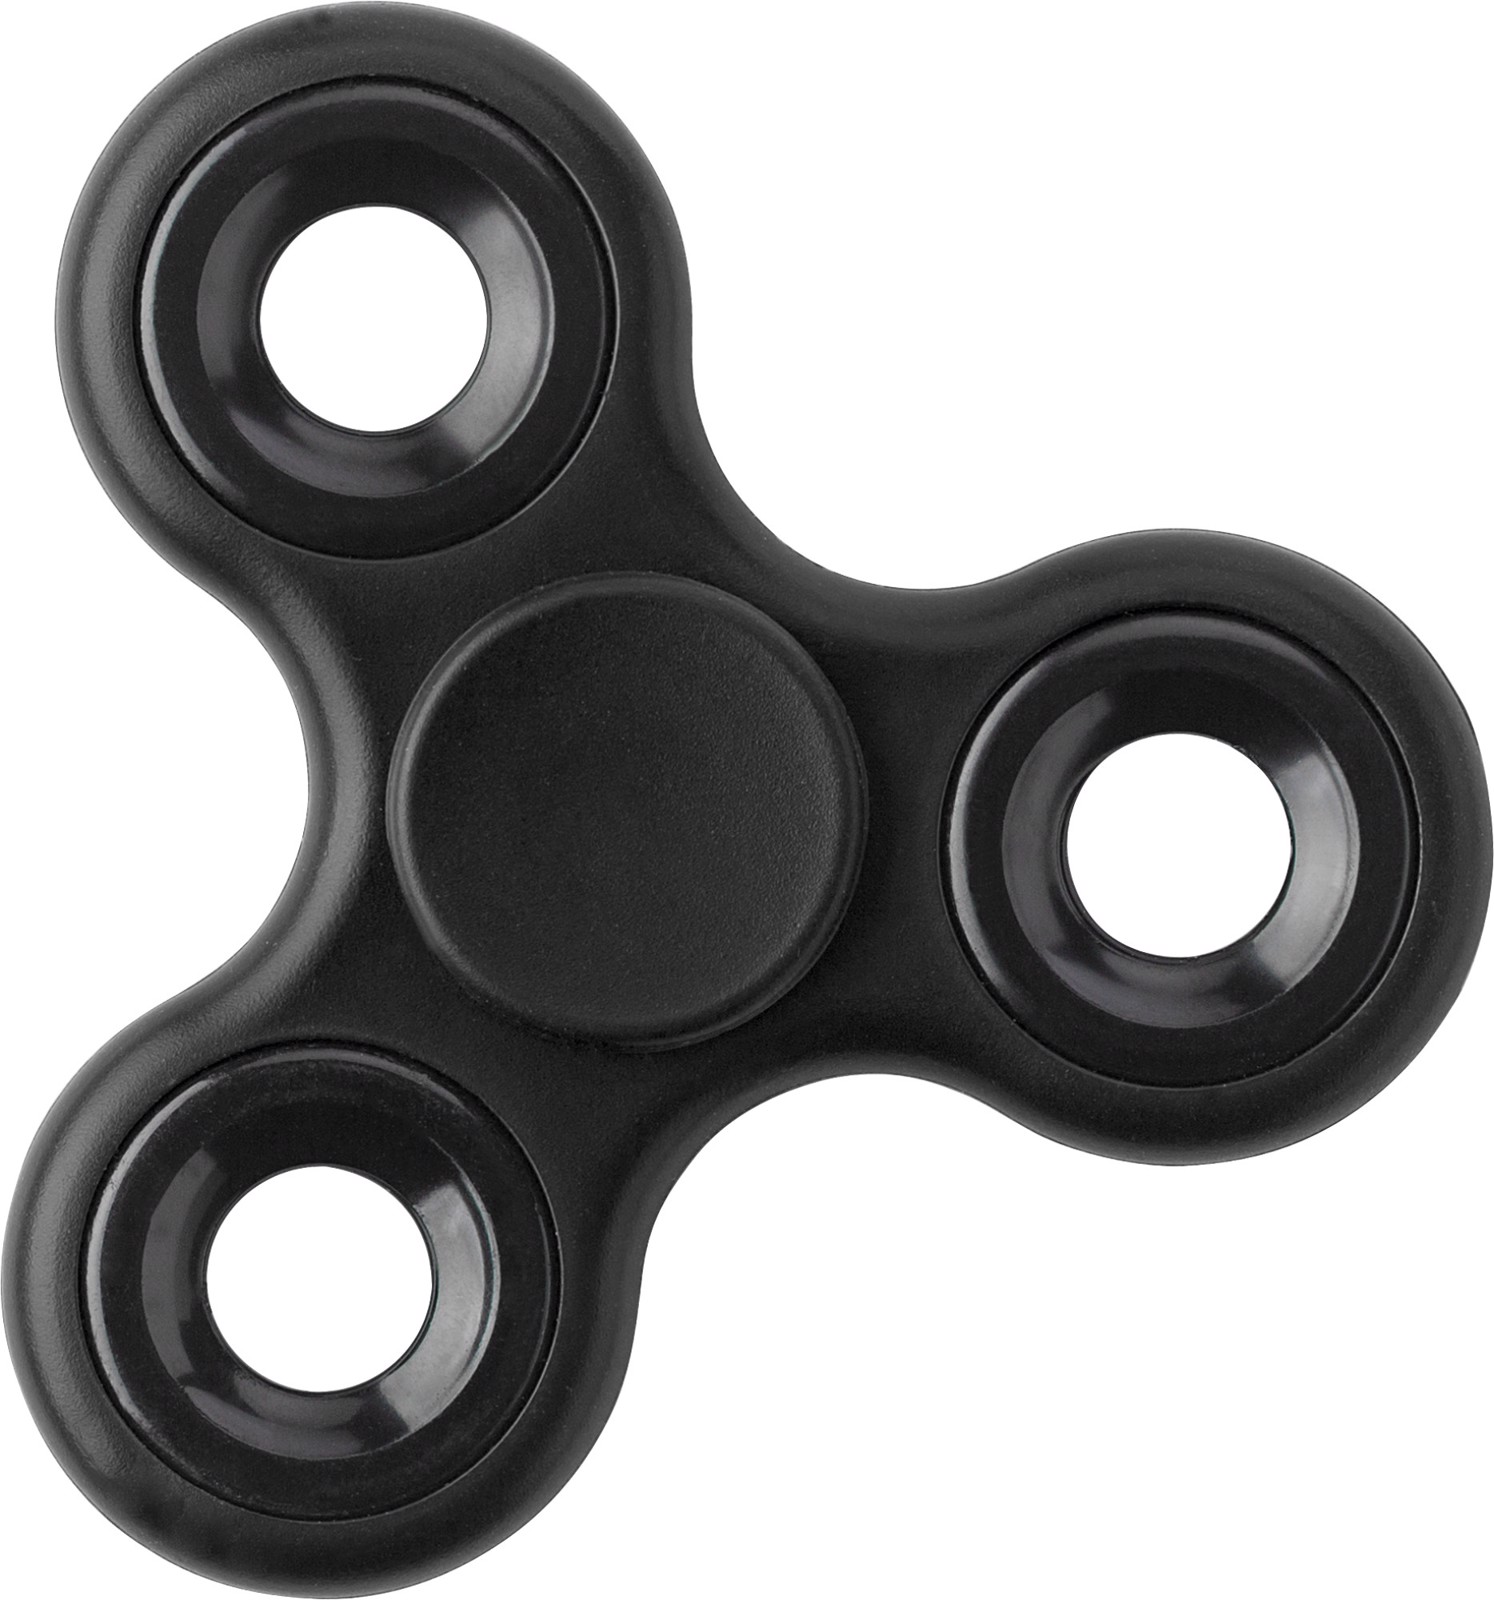 ABS fidget spinner - Black